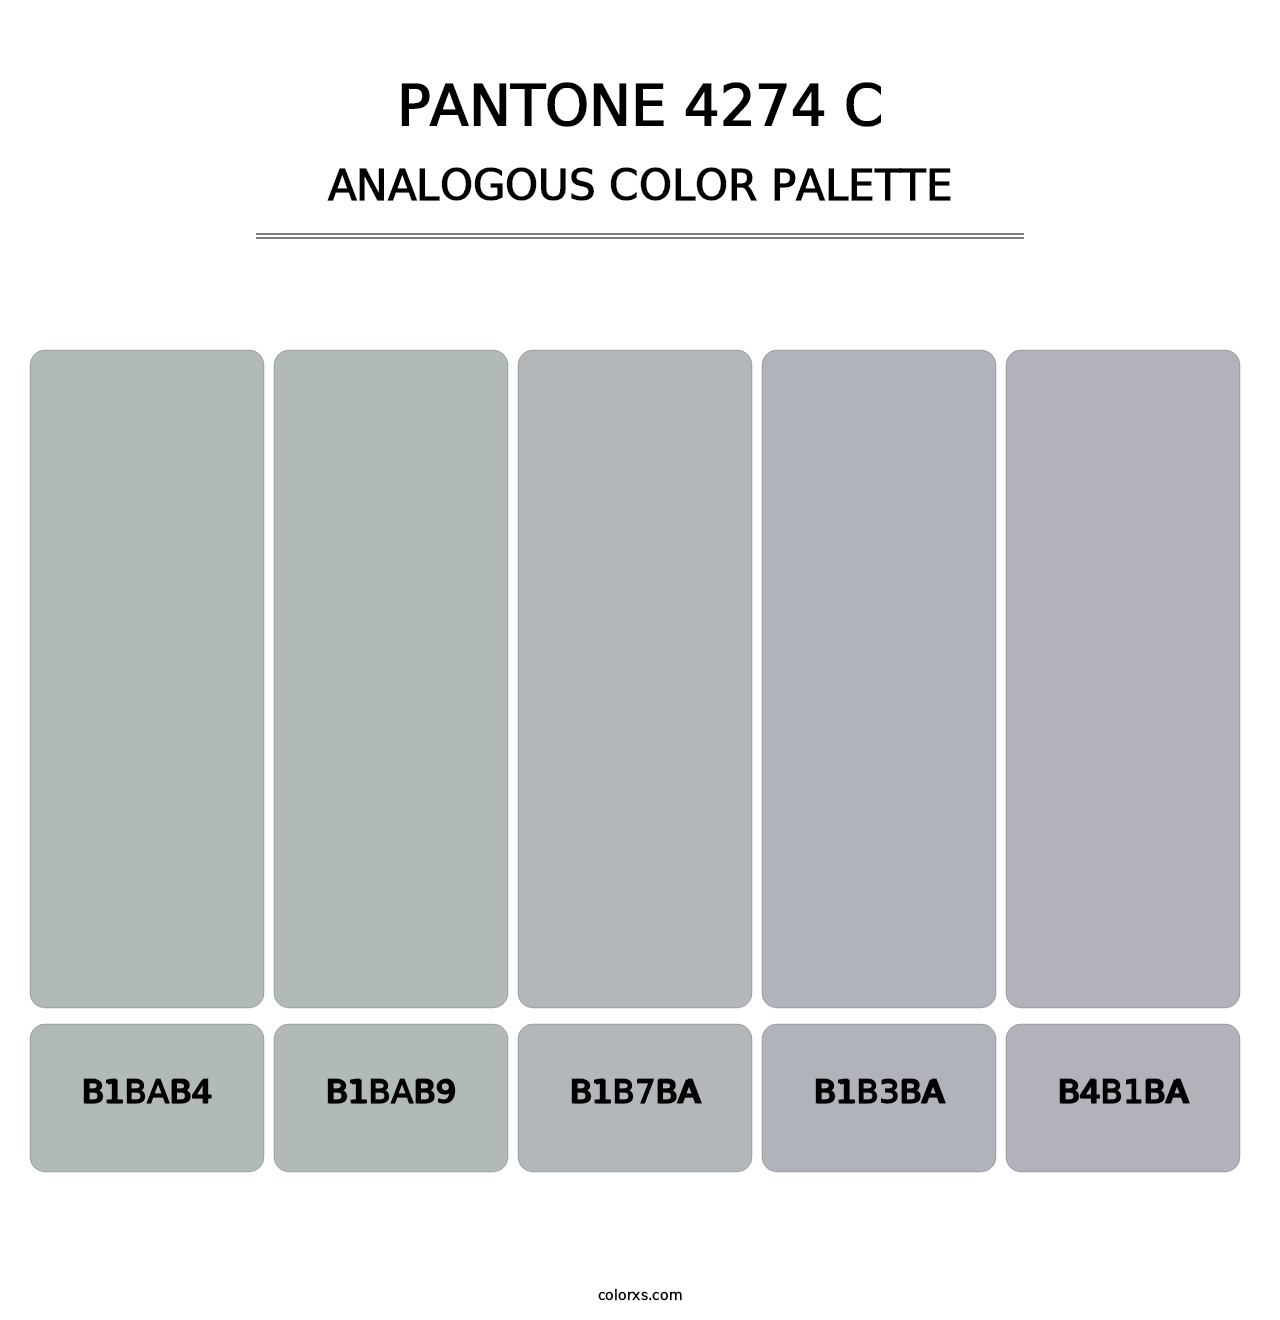 PANTONE 4274 C - Analogous Color Palette